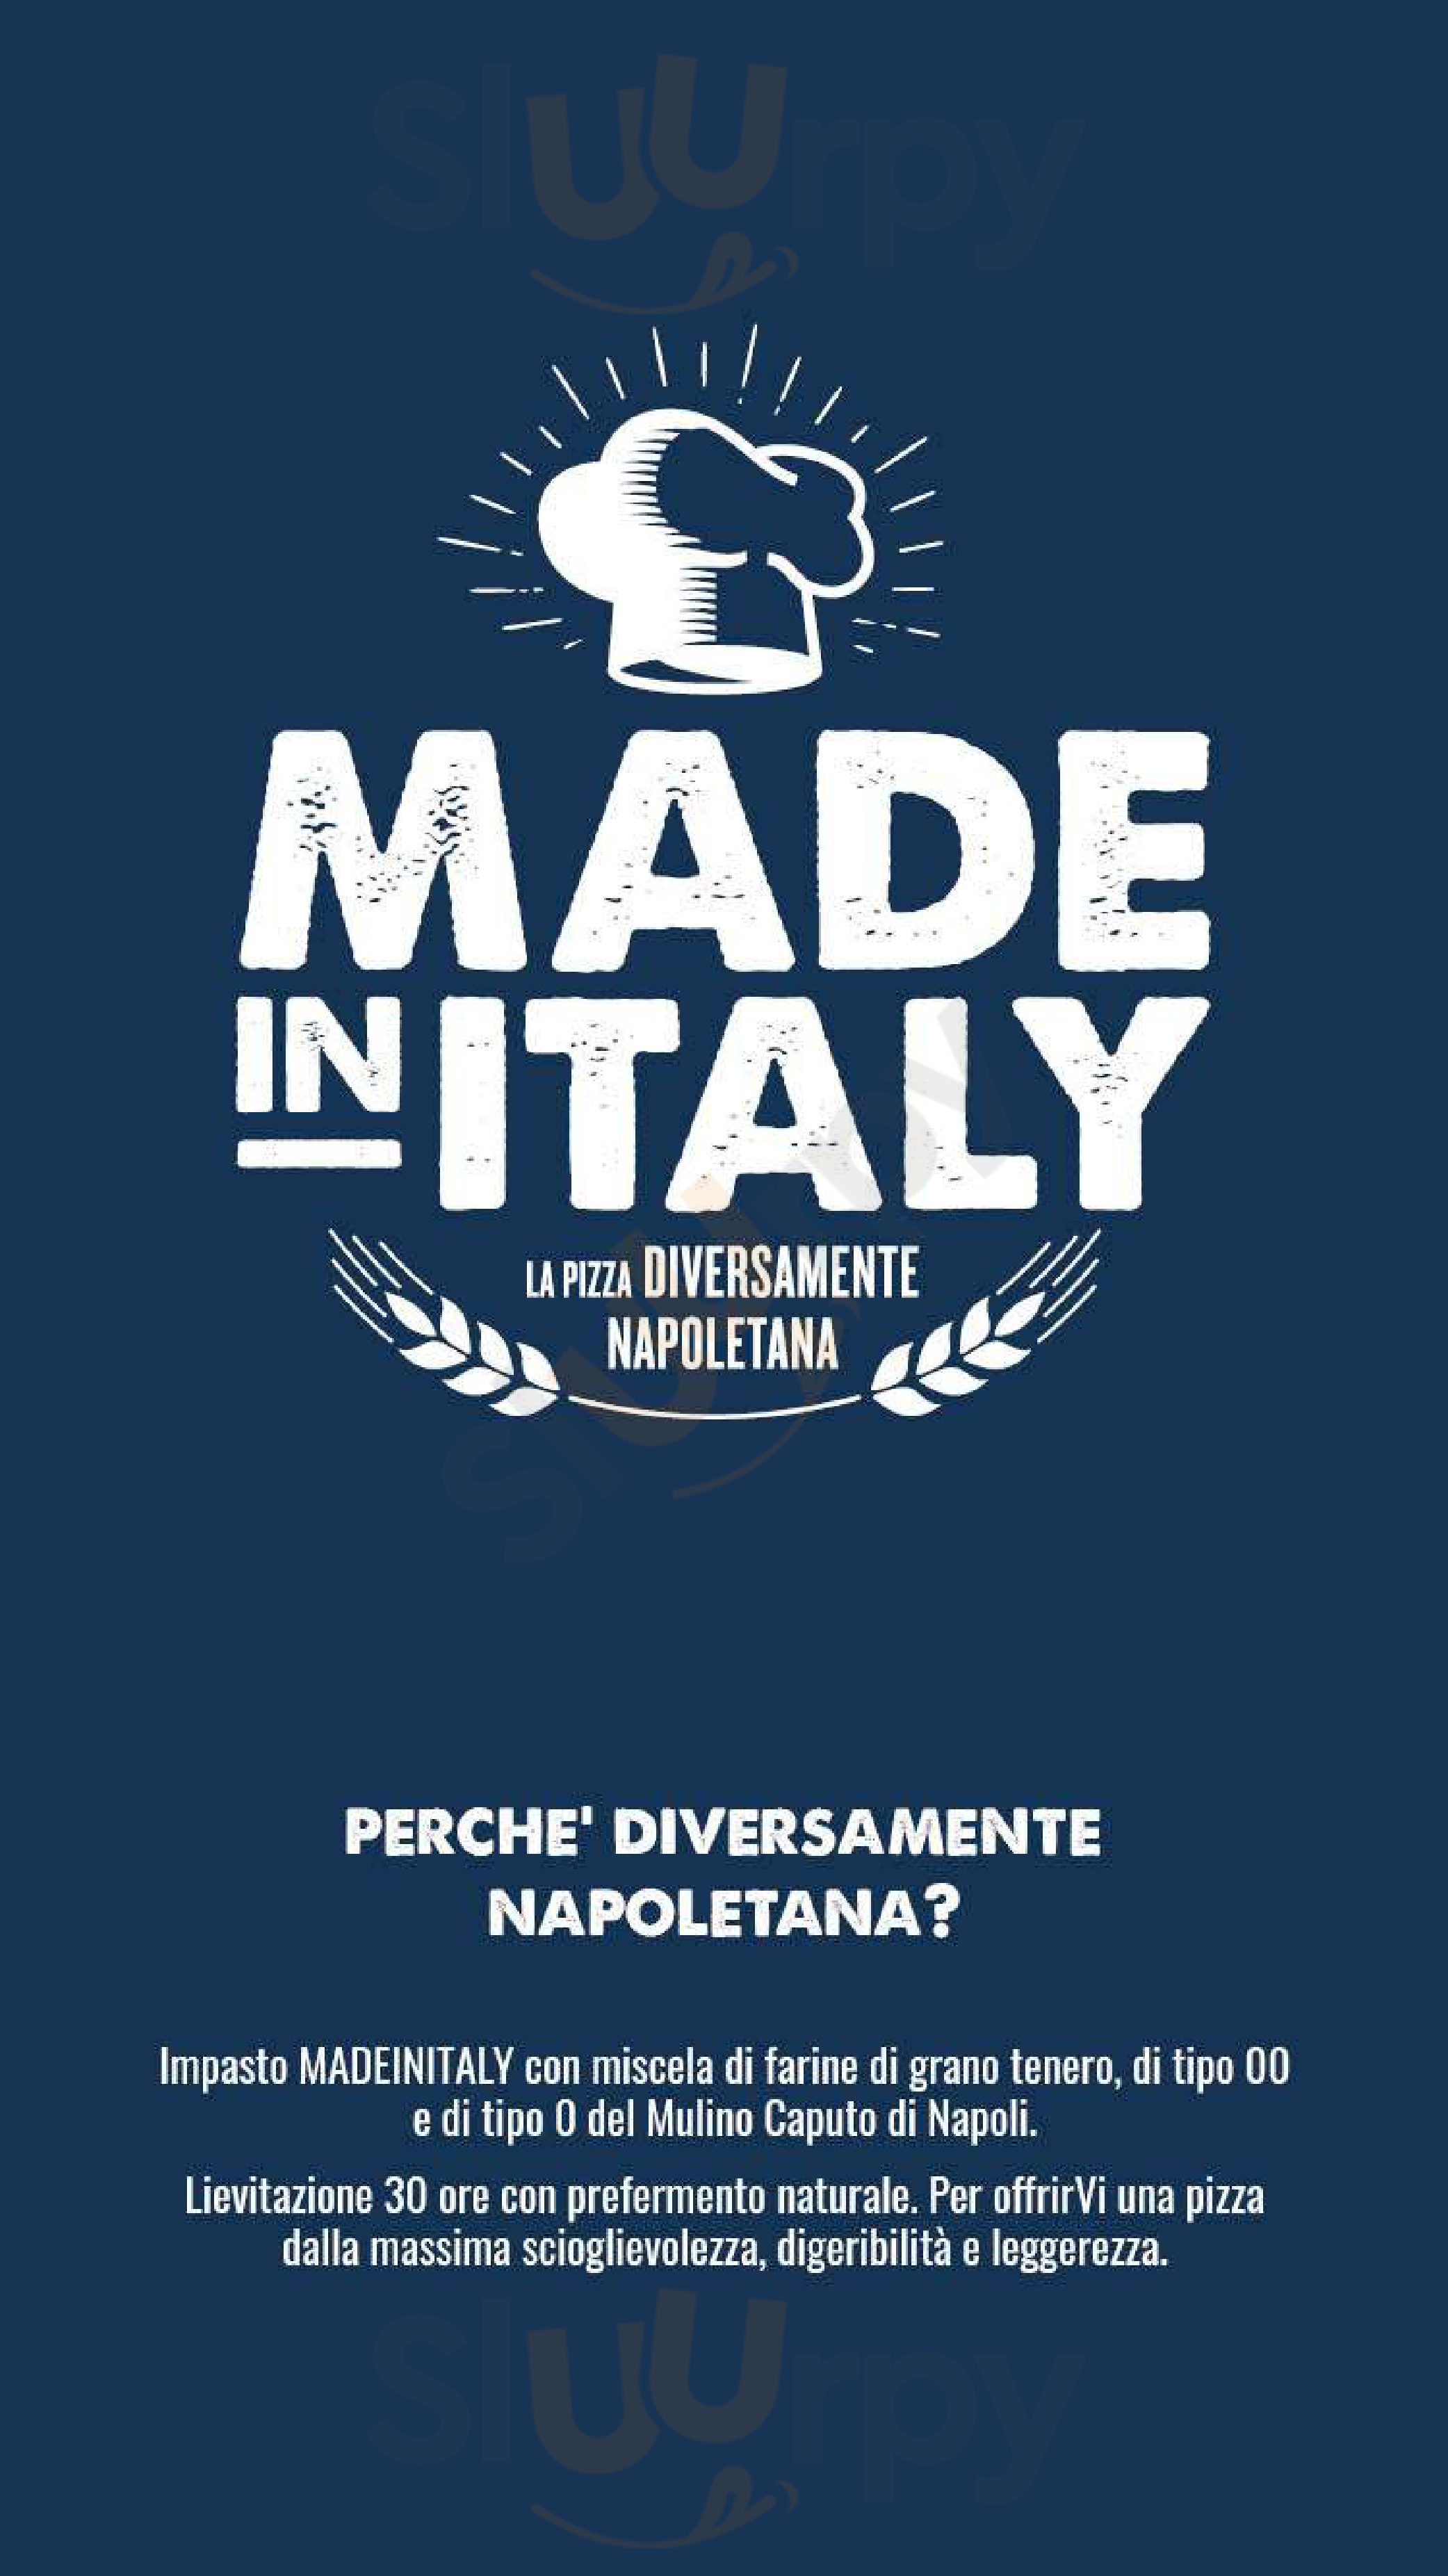 Made in Italy - Profumi & Sapori d'Italia Cassano Magnago menù 1 pagina